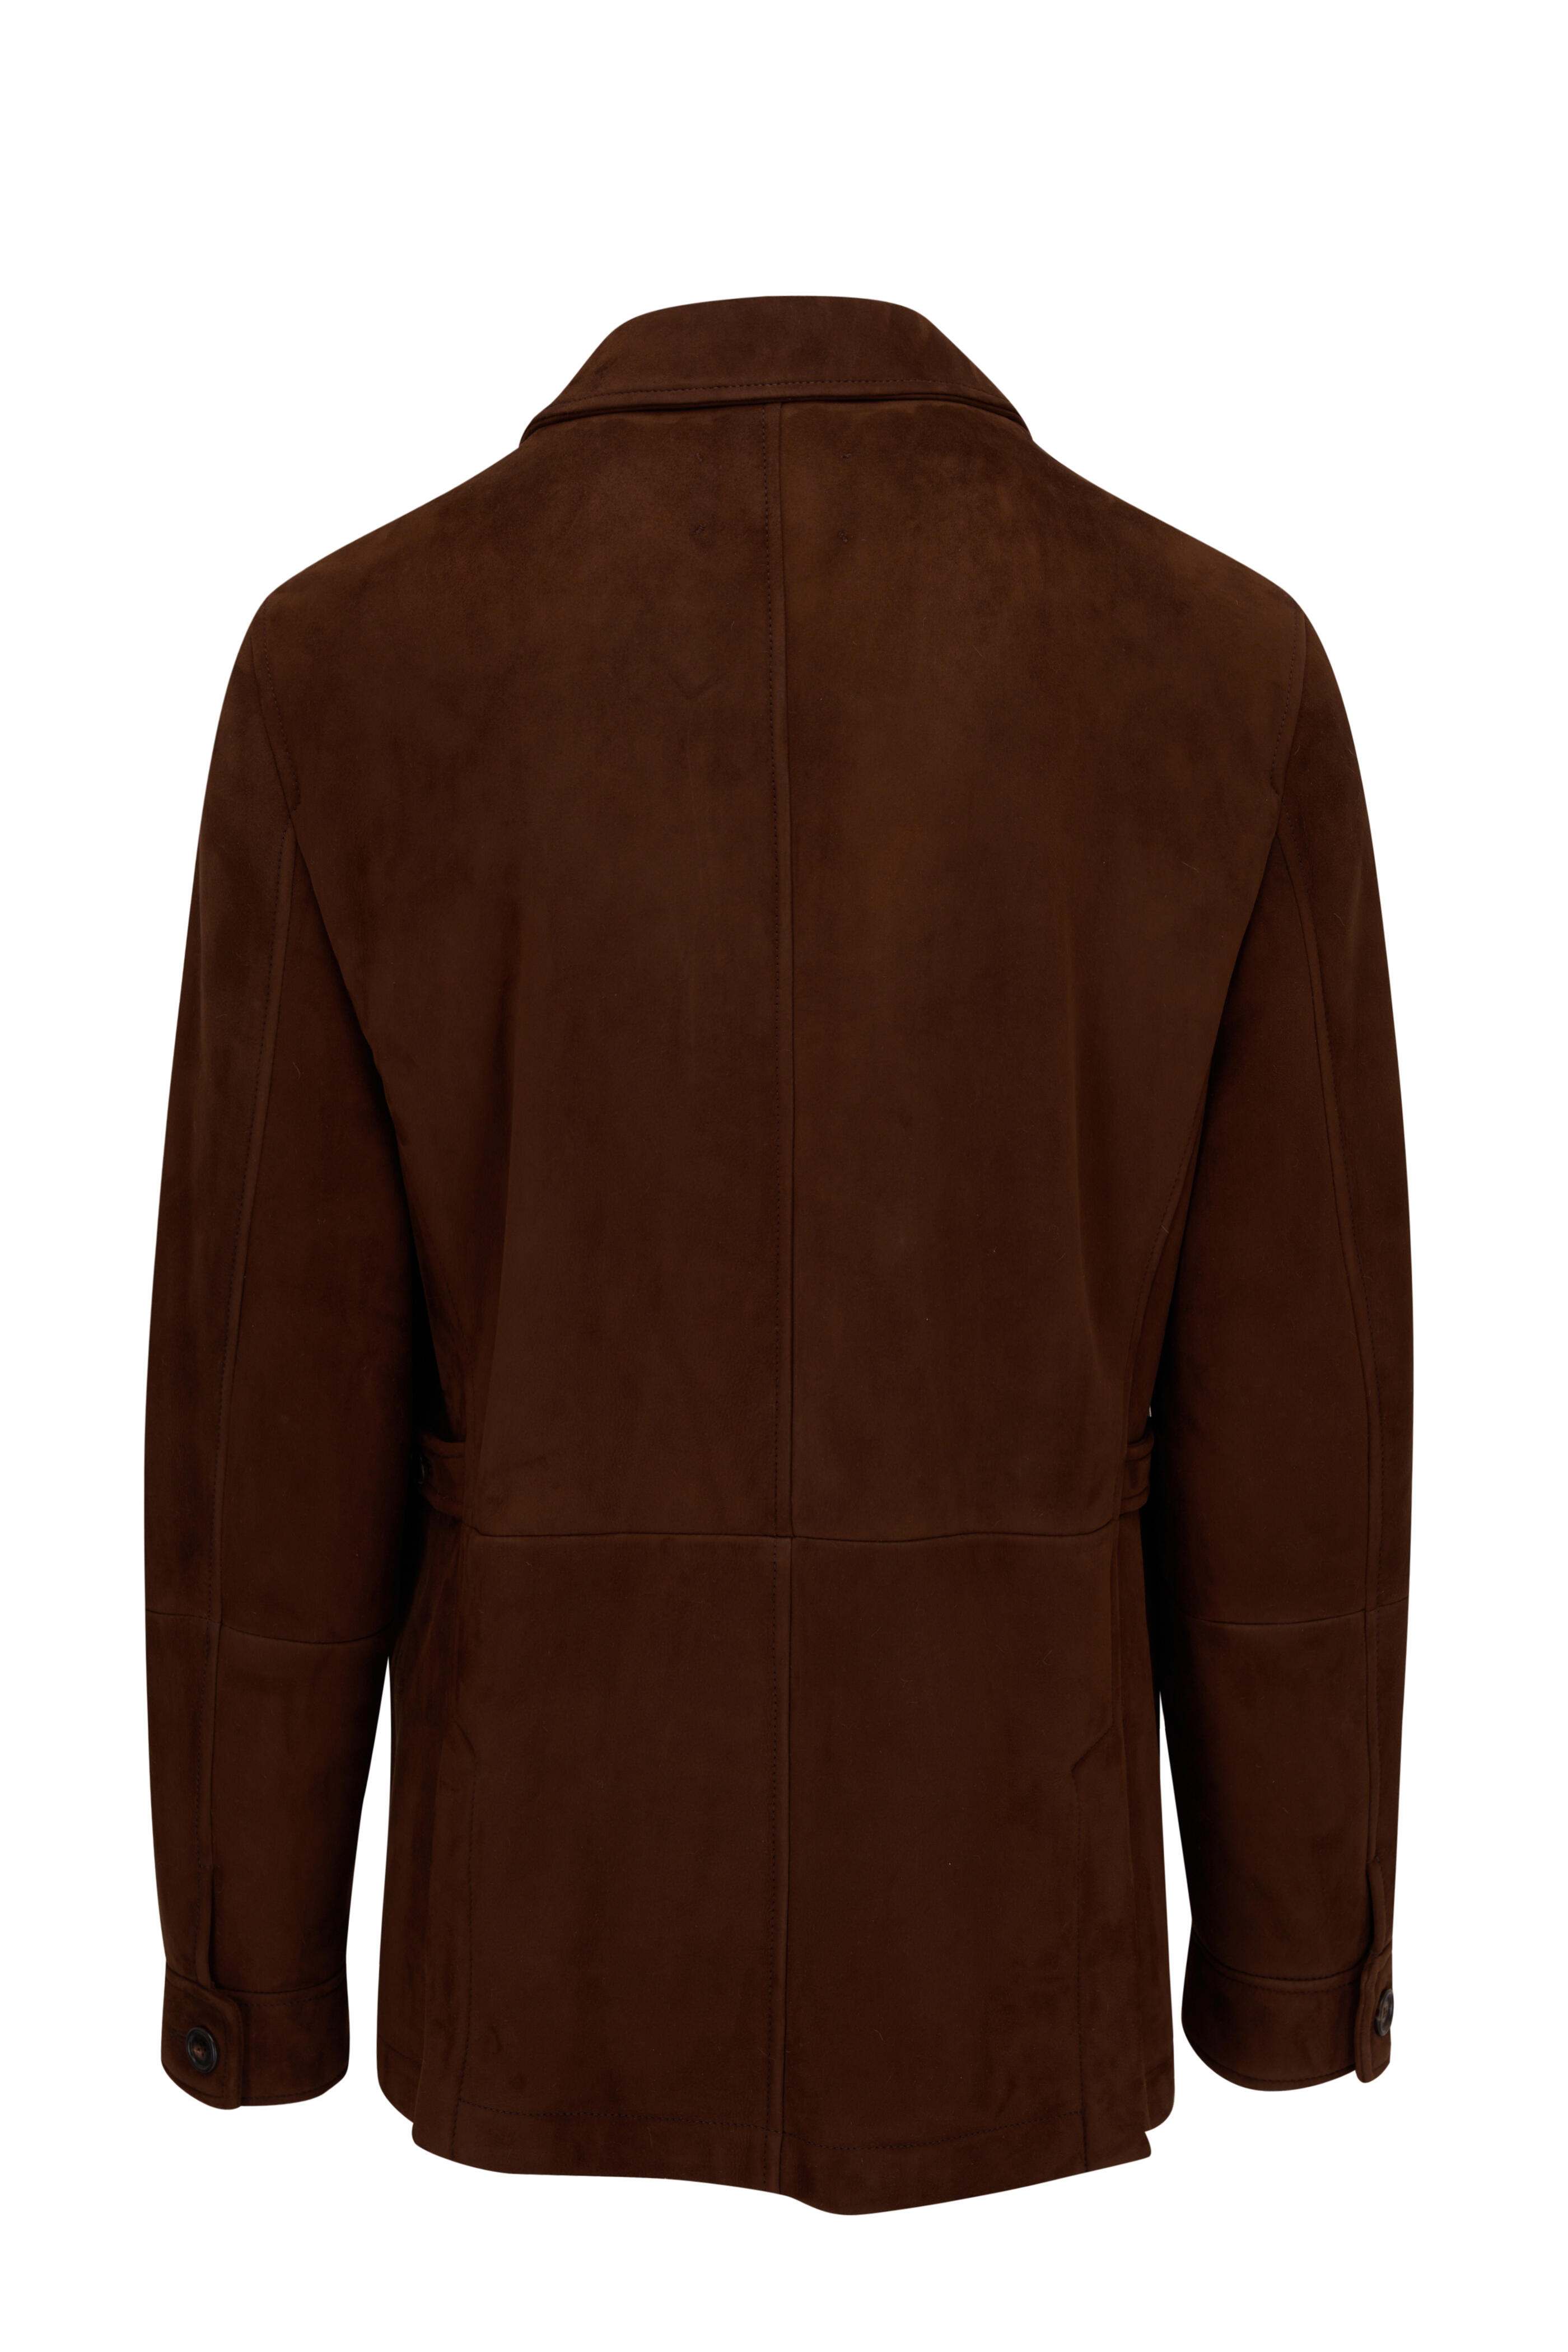 Brunello Cucinelli - Dark Brown Suede Shearling Field Jacket